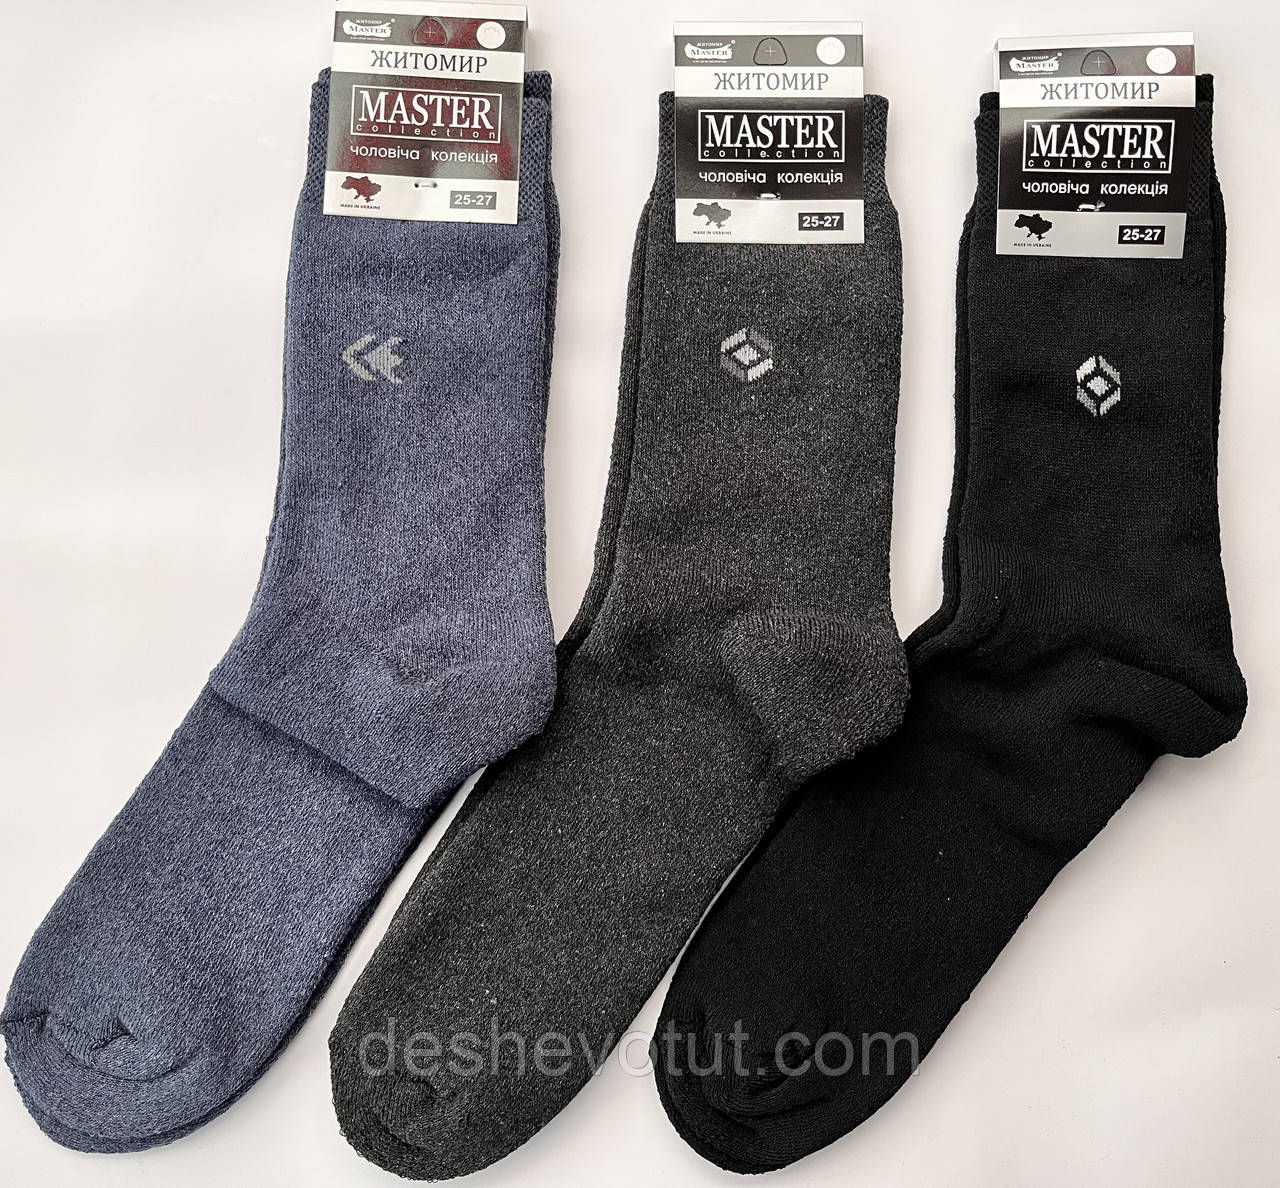 Шкарпетки чоловічі х/б махрові МАСТЕР економ — 25-27,27-29розміри